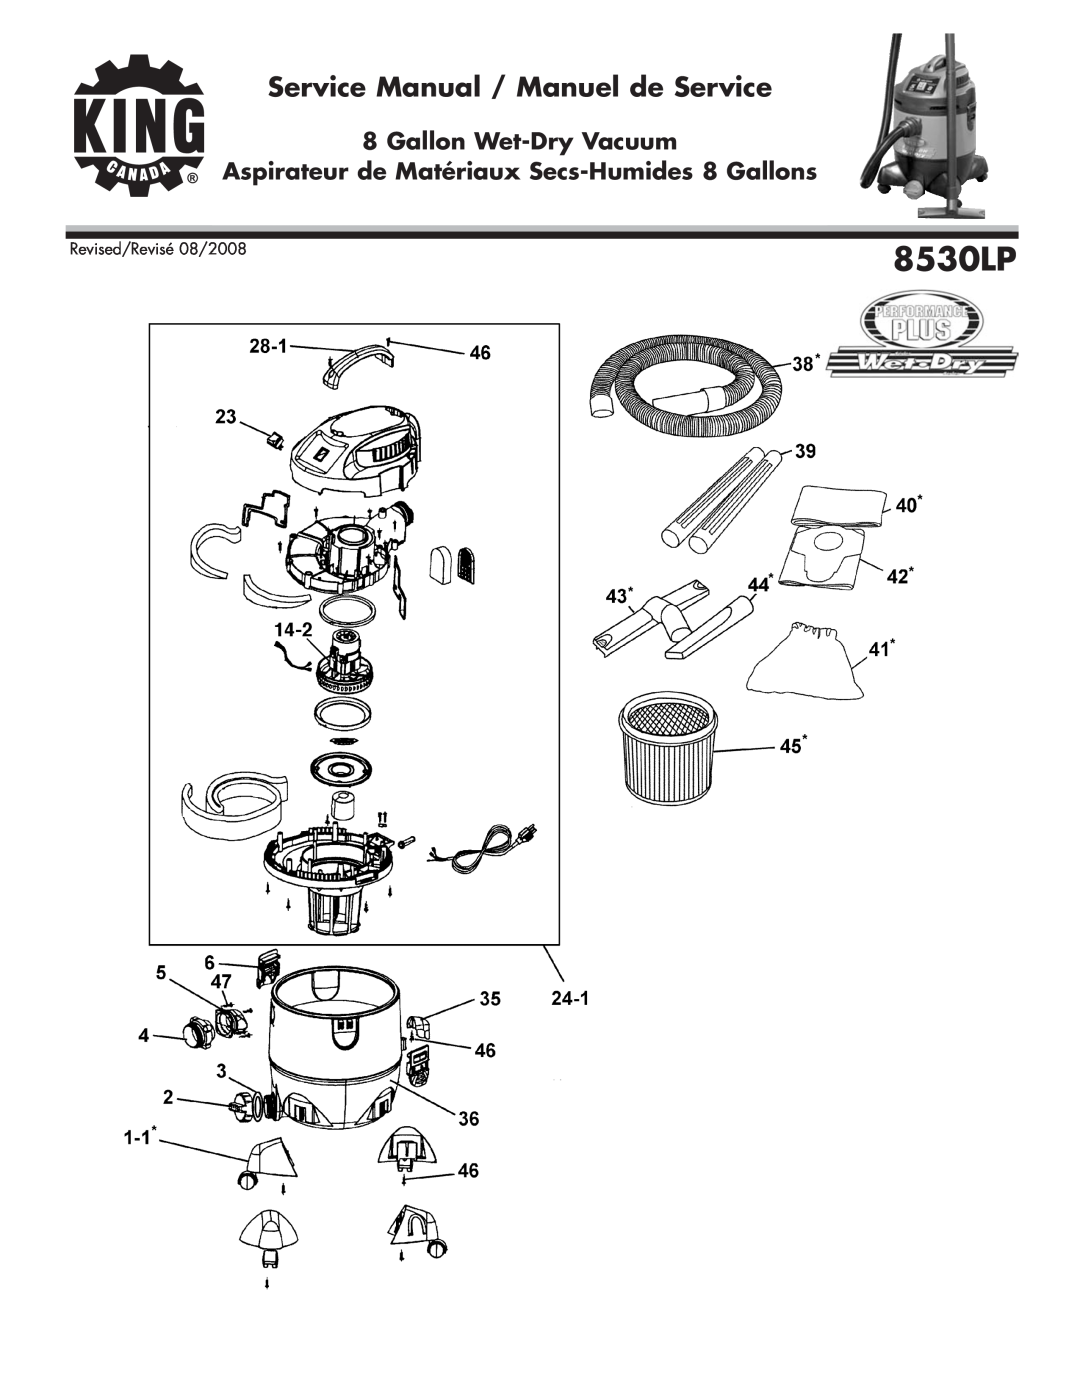 King Canada 8530LP service manual Gallon Wet-DryVacuum, Aspirateur de Matériaux Secs-Humides8 Gallons 